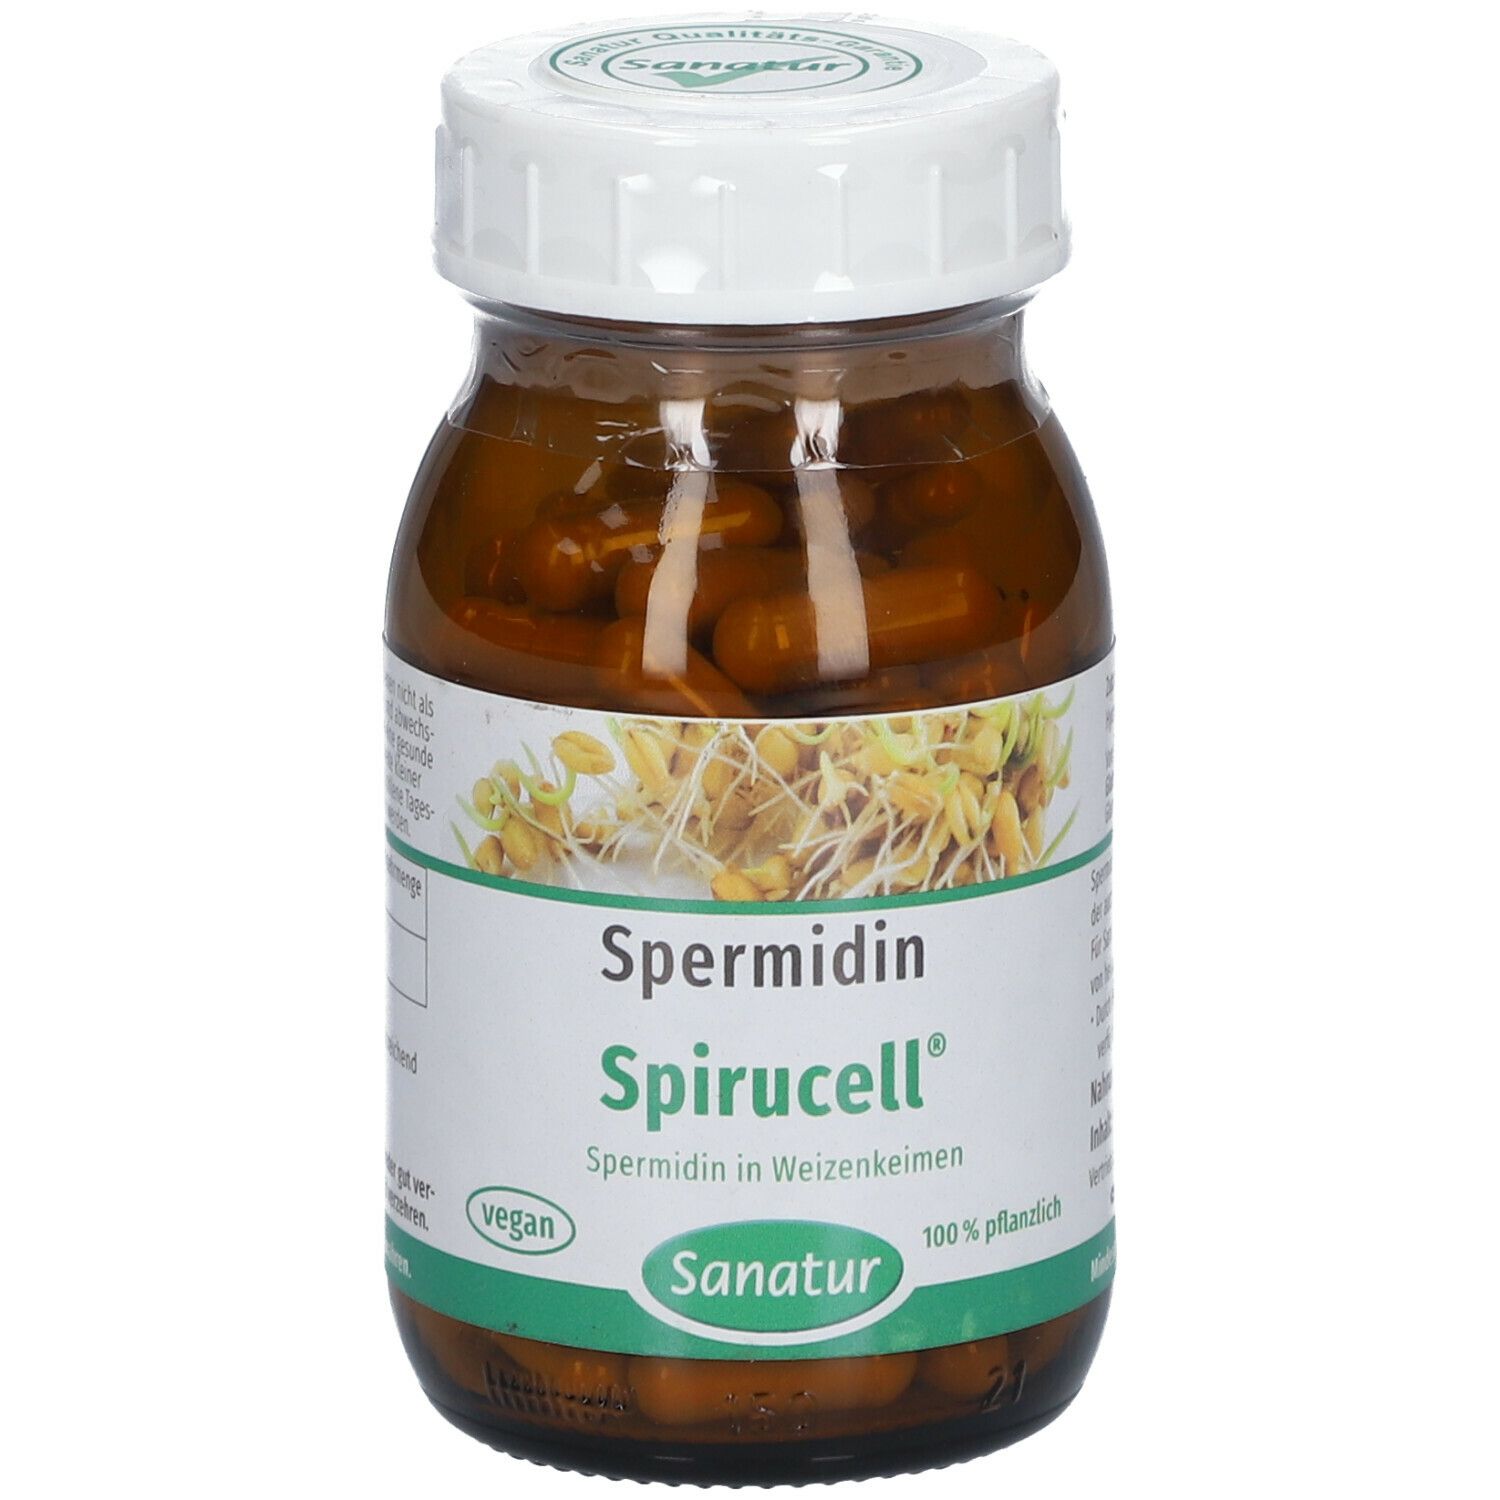 SANATUR Spermidine Spirucell® Capsules